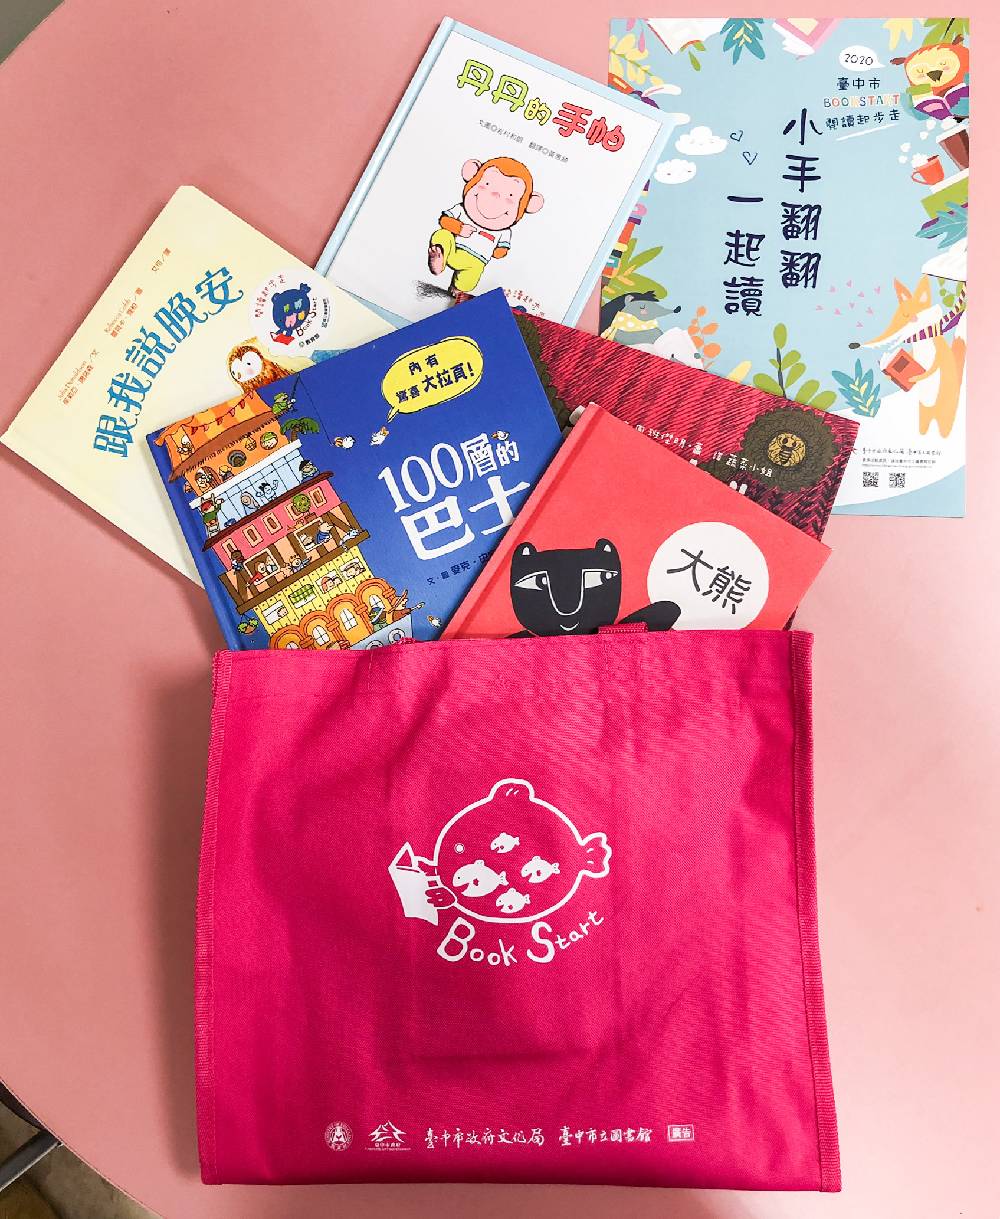 閱讀起步走」活動今年再度跨界合作，與社會局兒少福利科及0-5歲社福機構單位合作，共同整合嬰幼兒閱讀及育兒相關資源贈送閱讀禮袋給幼兒家長們